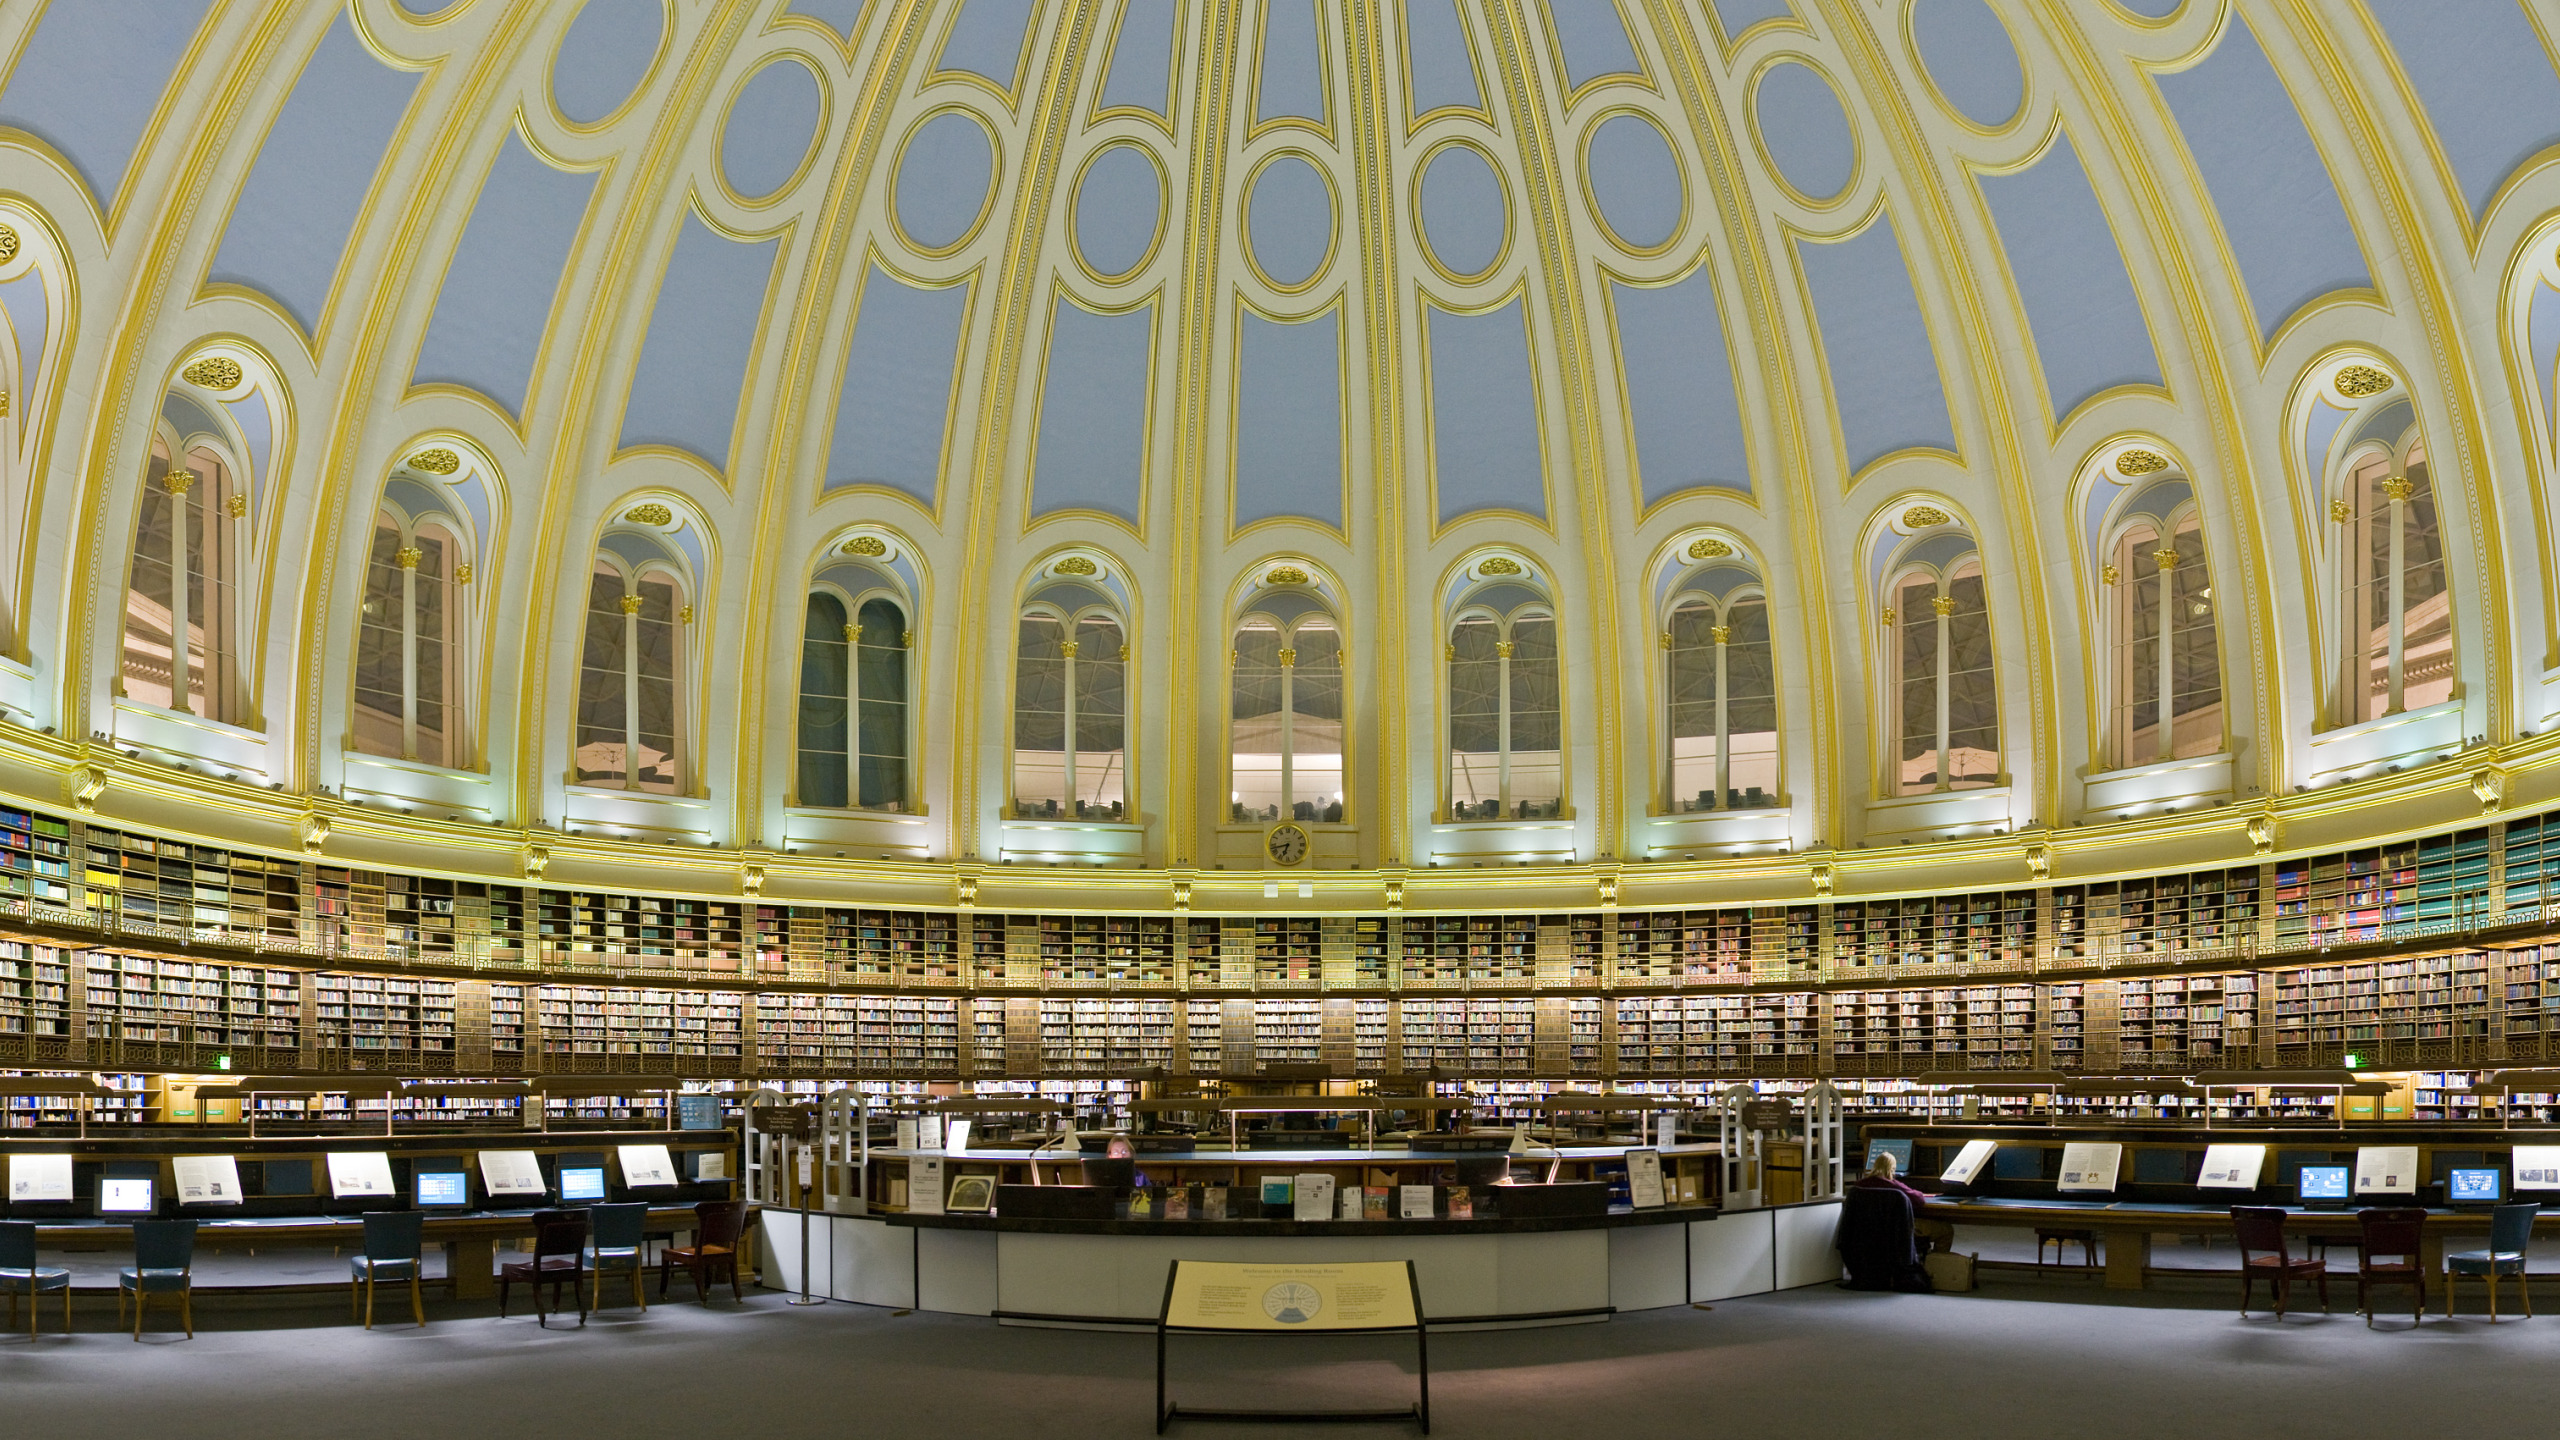 Библиотека научно технической информации. Библиотека британского музея в Лондоне. Читальный зал британского музея. Читальный зал британского музея в Лондоне. Национальная библиотека британского музея.